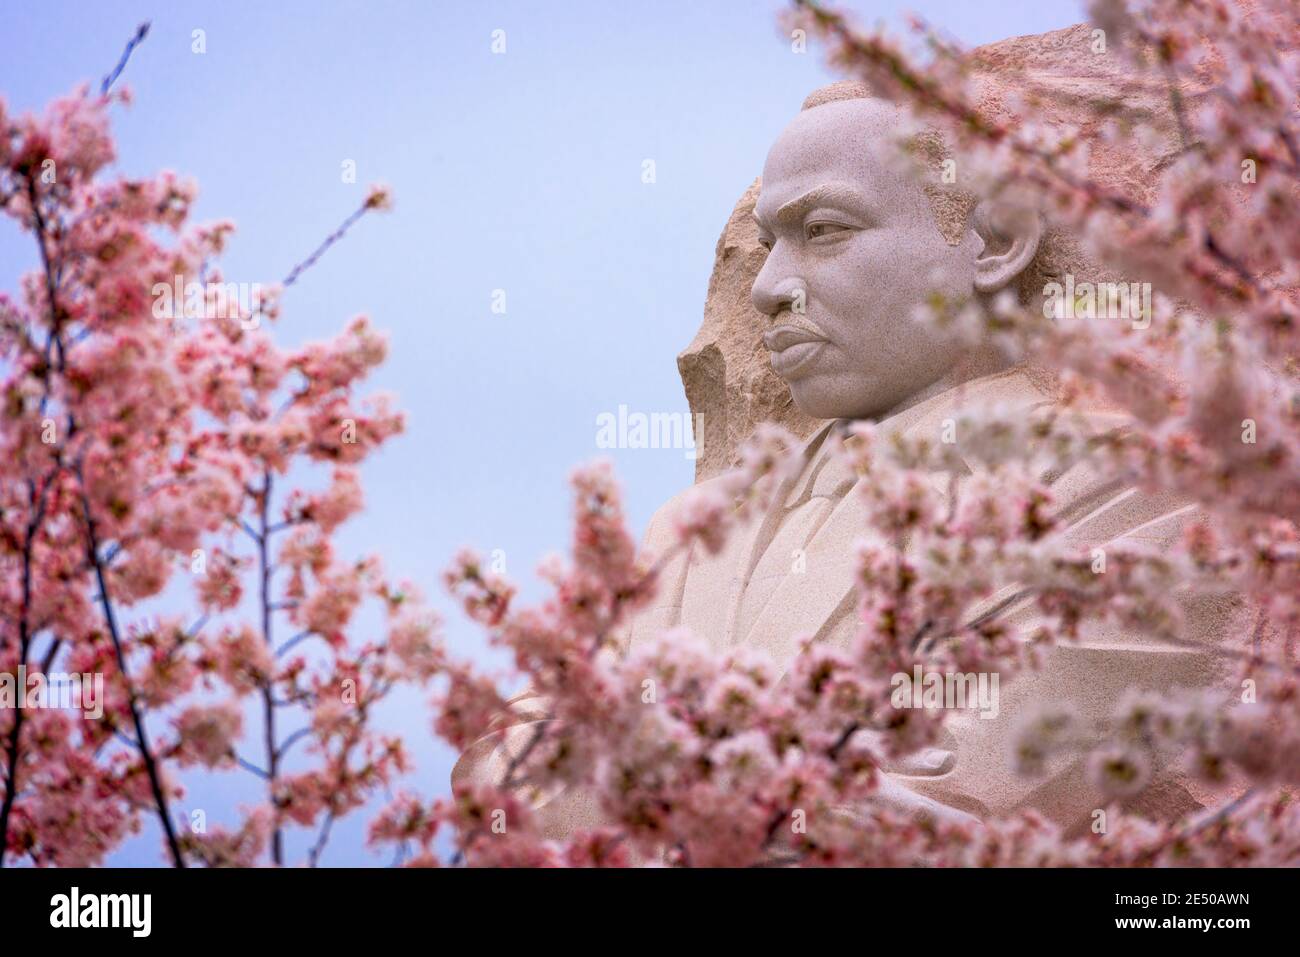 WASHINGTON - 8 APRILE 2015: Il memoriale al leader dei diritti civili Martin Luther King, Jr. Durante la stagione primaverile nel West Potomac Park. Foto Stock